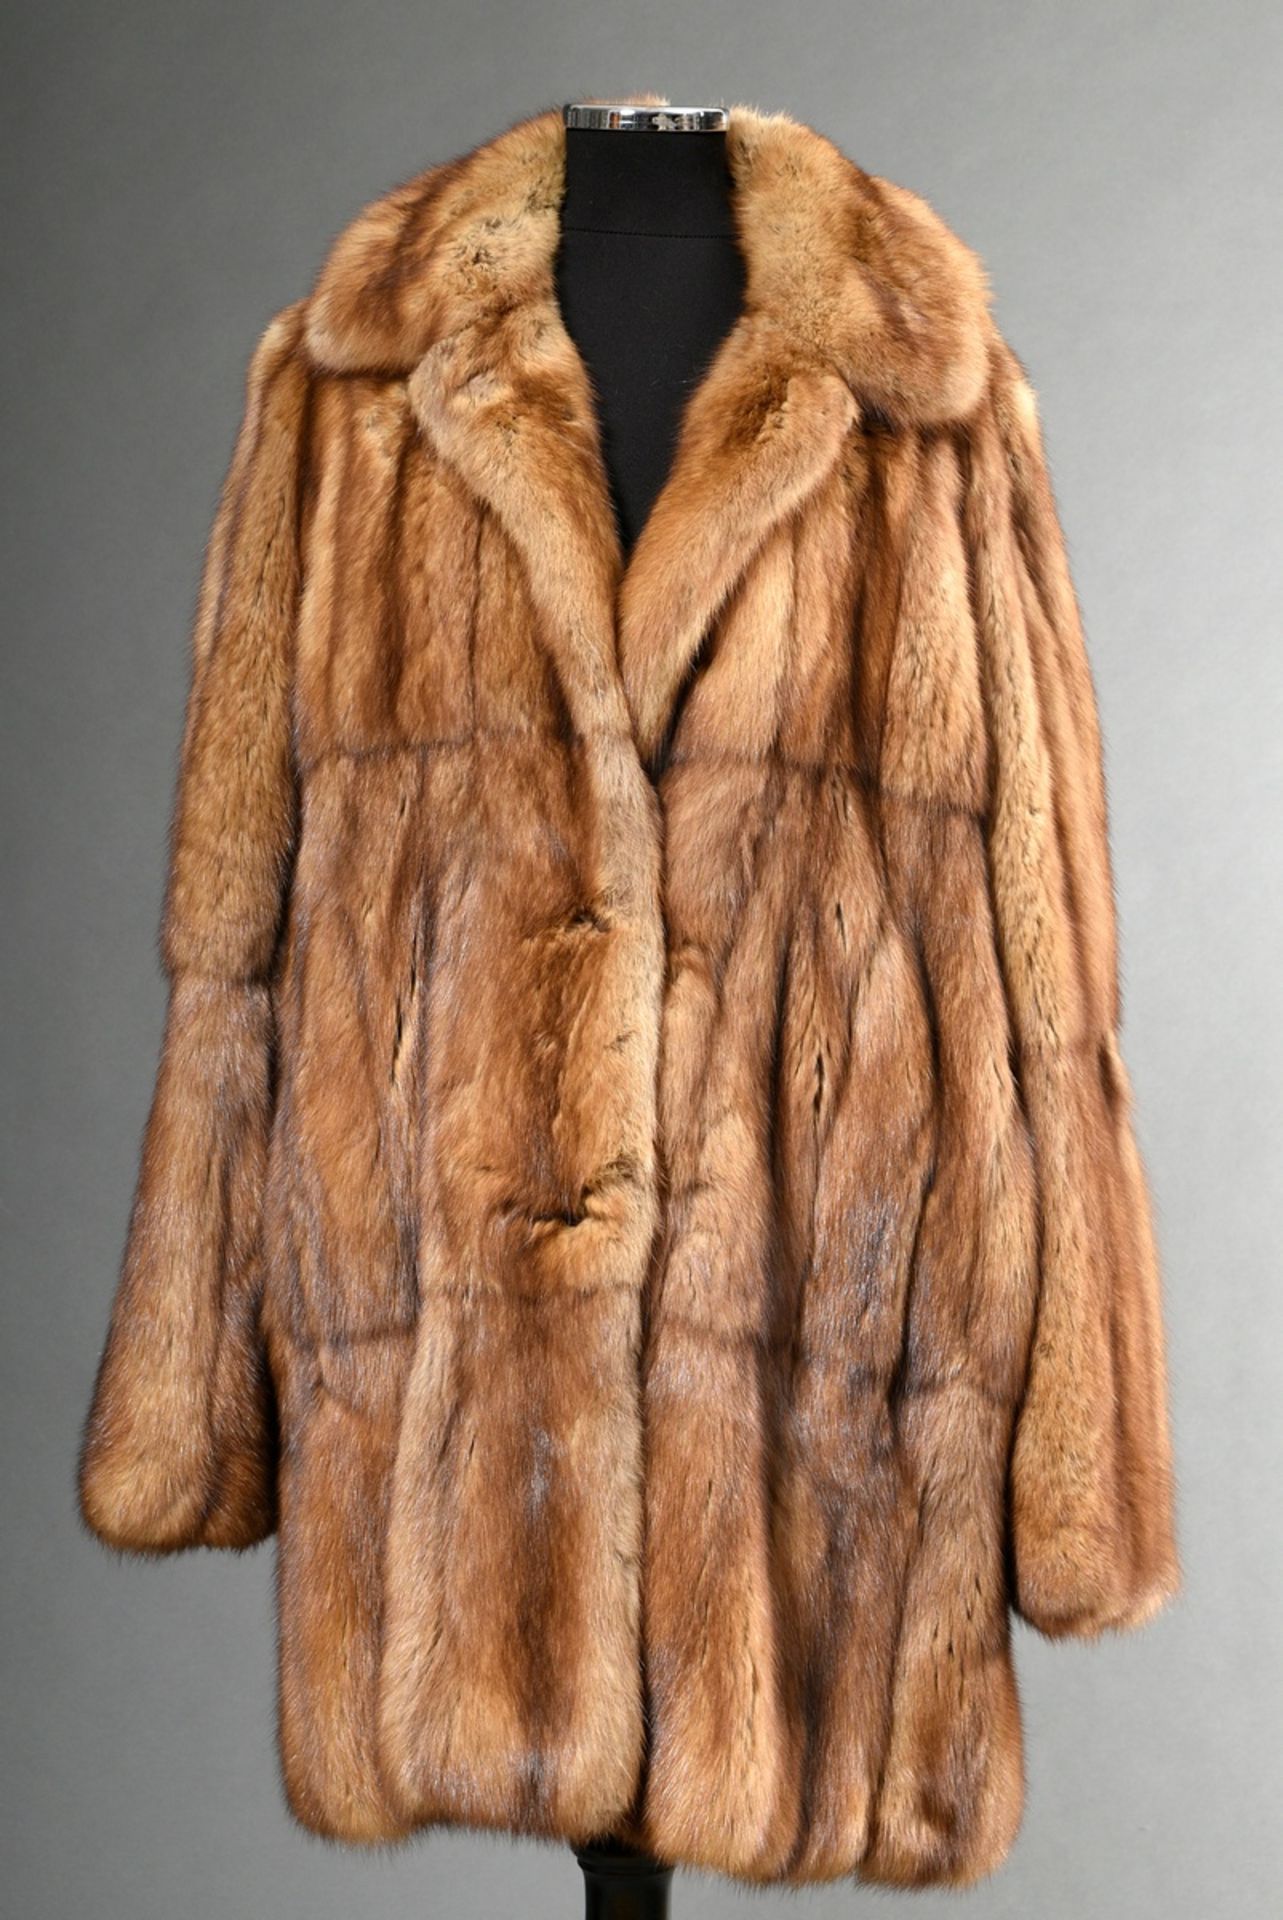 Kanadische Goldzobel Jacke aus längs verarbeiteten Fellen, Bonnie Models Nr. 161940, 2004 bei Unger